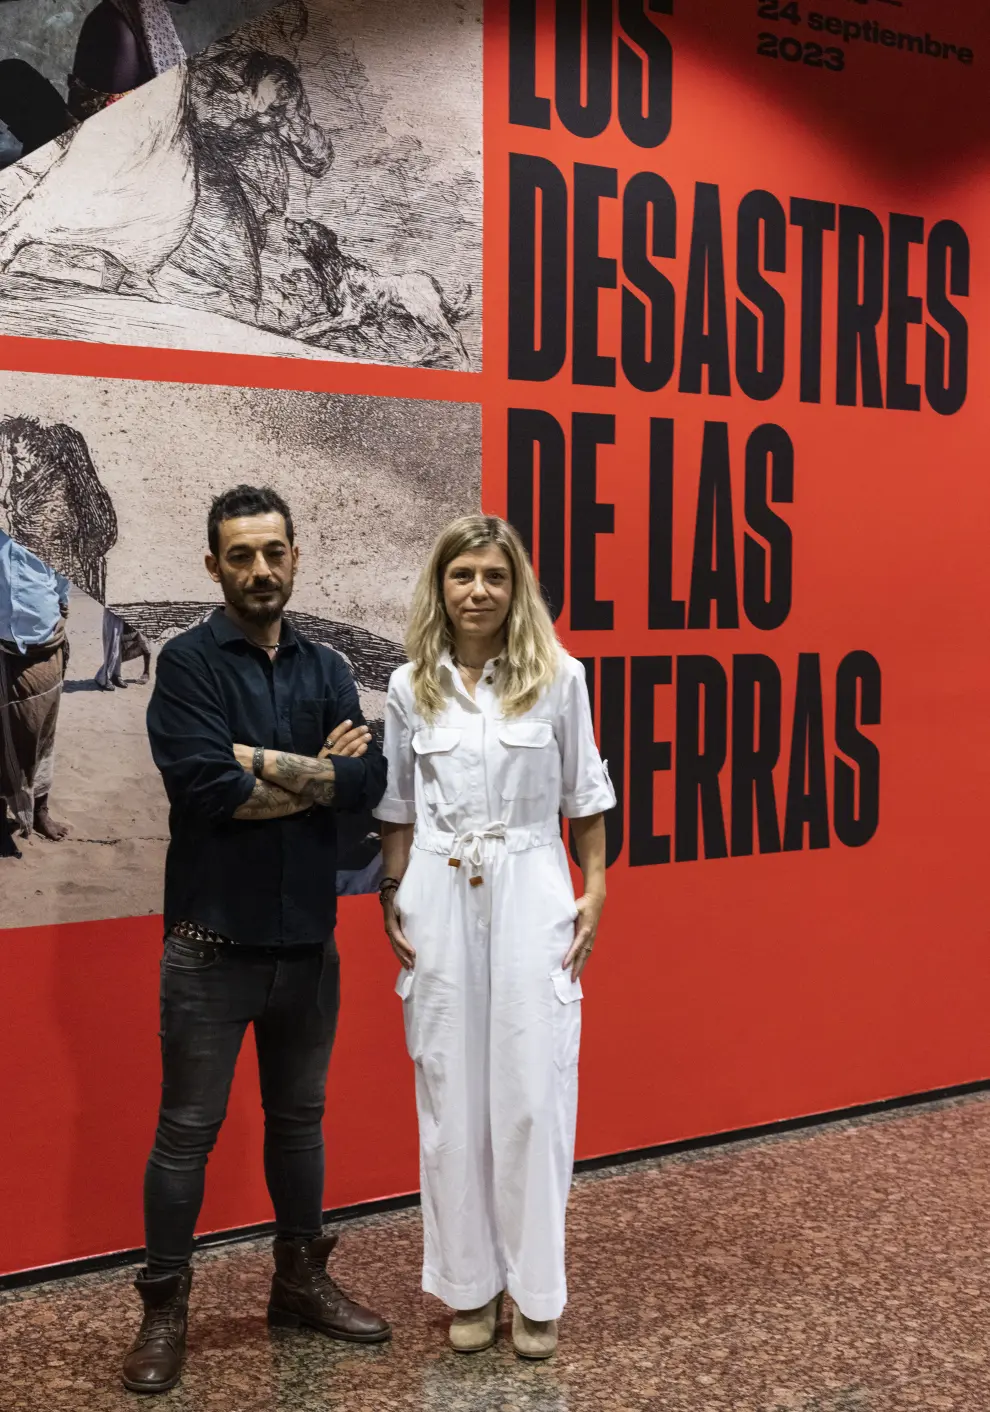 Exposición de los 'Desastres de la guerra' en el Patio de la Infanta en Zaragoza.